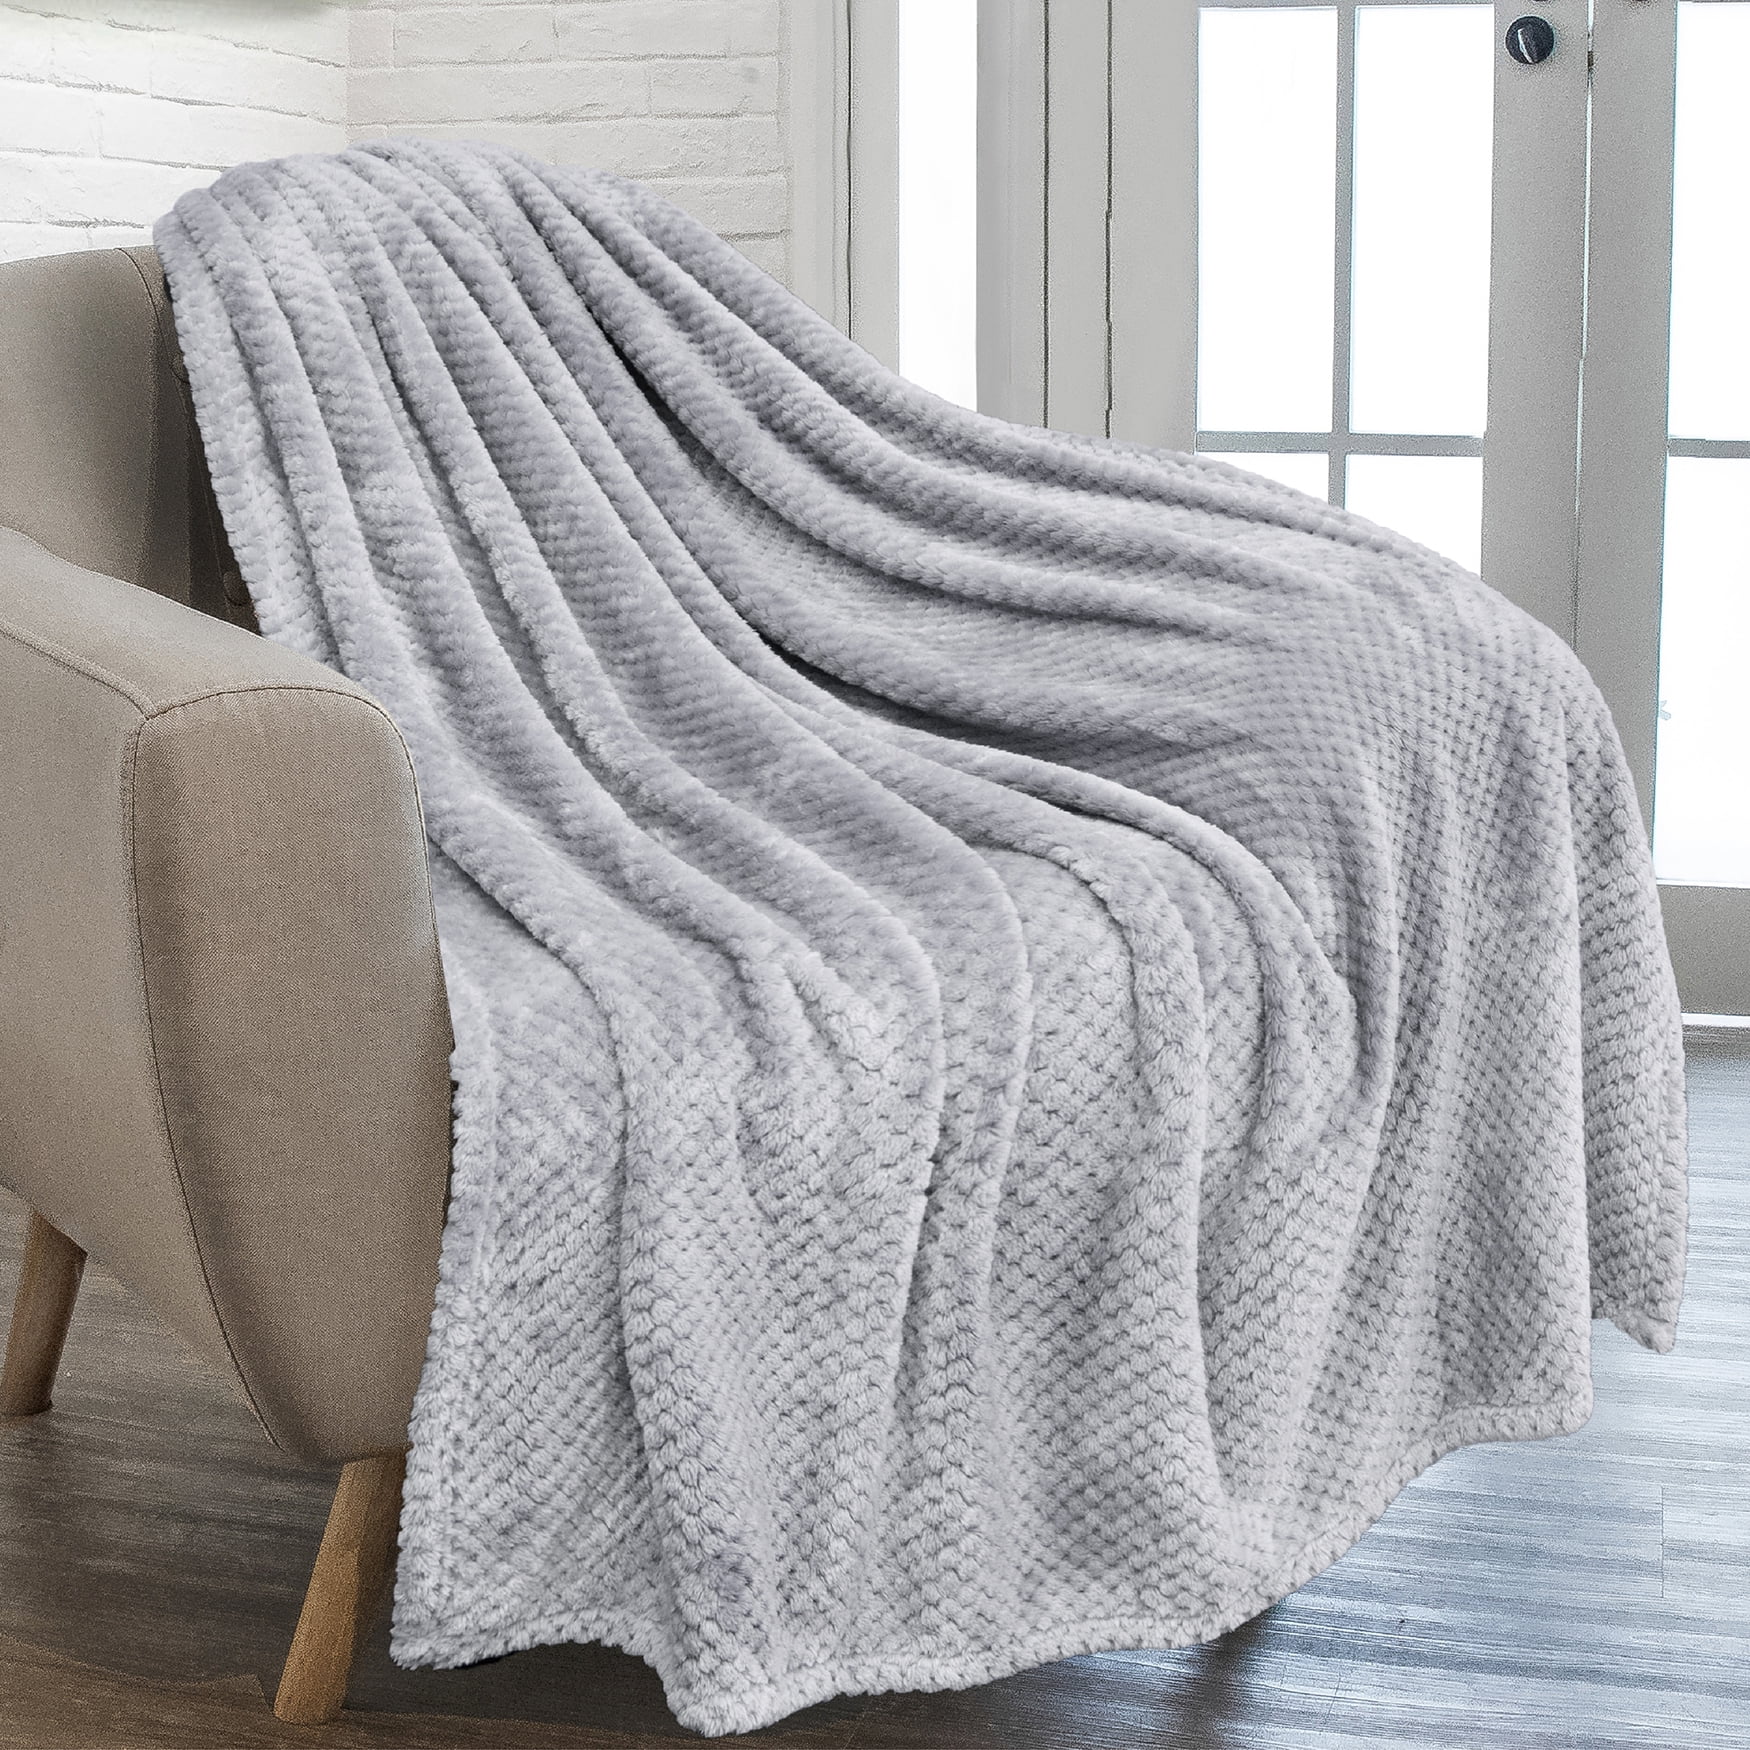 POPCORN THROW Fleece Blanket Faux Fur Waffle Throws Sofa Bed Settee Warm Cozy 